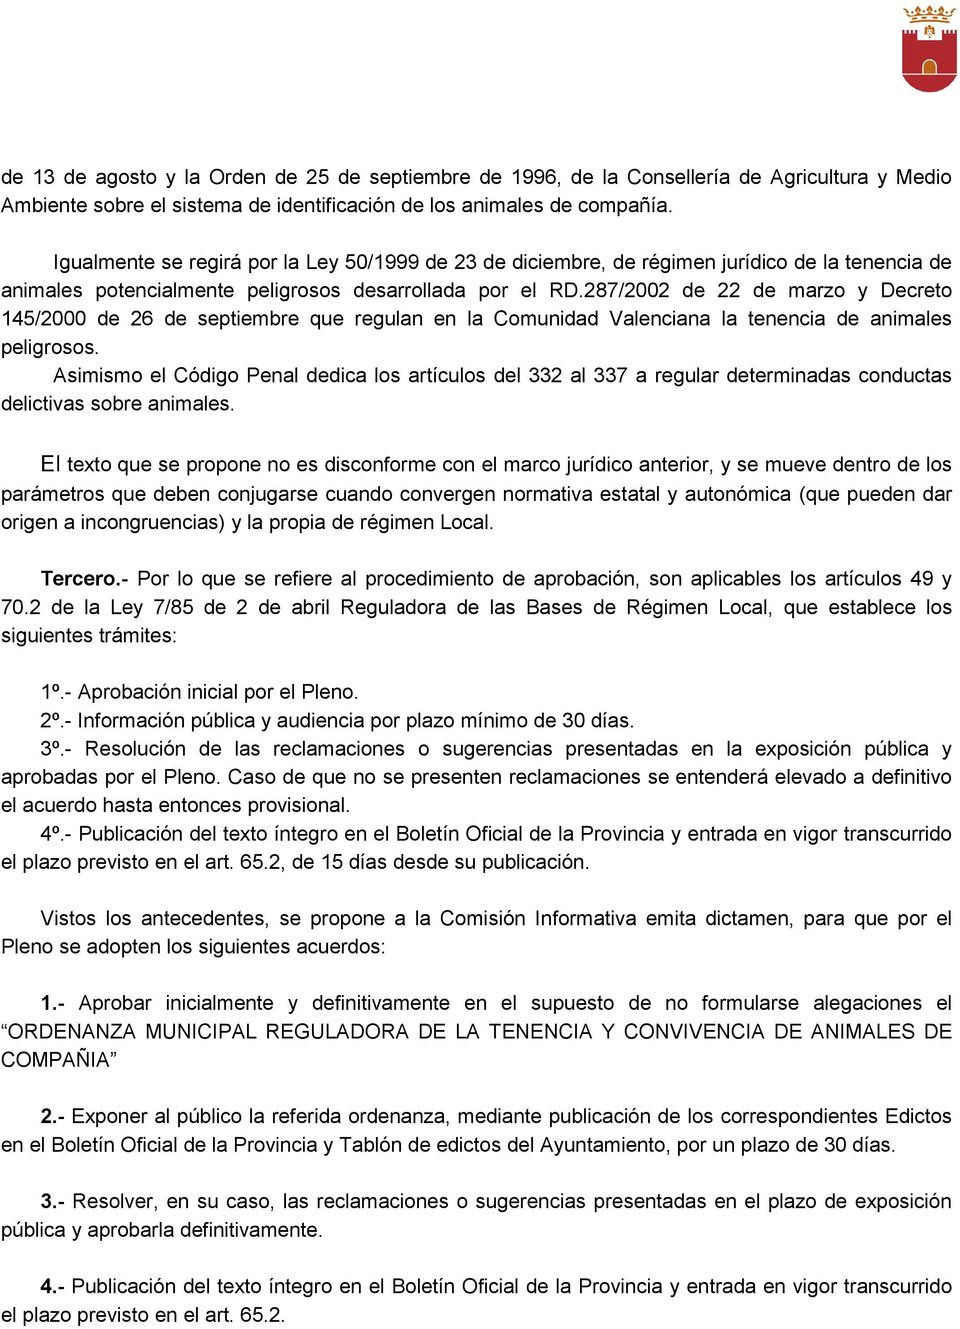 287/2002 de 22 de marzo y Decreto 145/2000 de 26 de septiembre que regulan en la Comunidad Valenciana la tenencia de animales peligrosos.